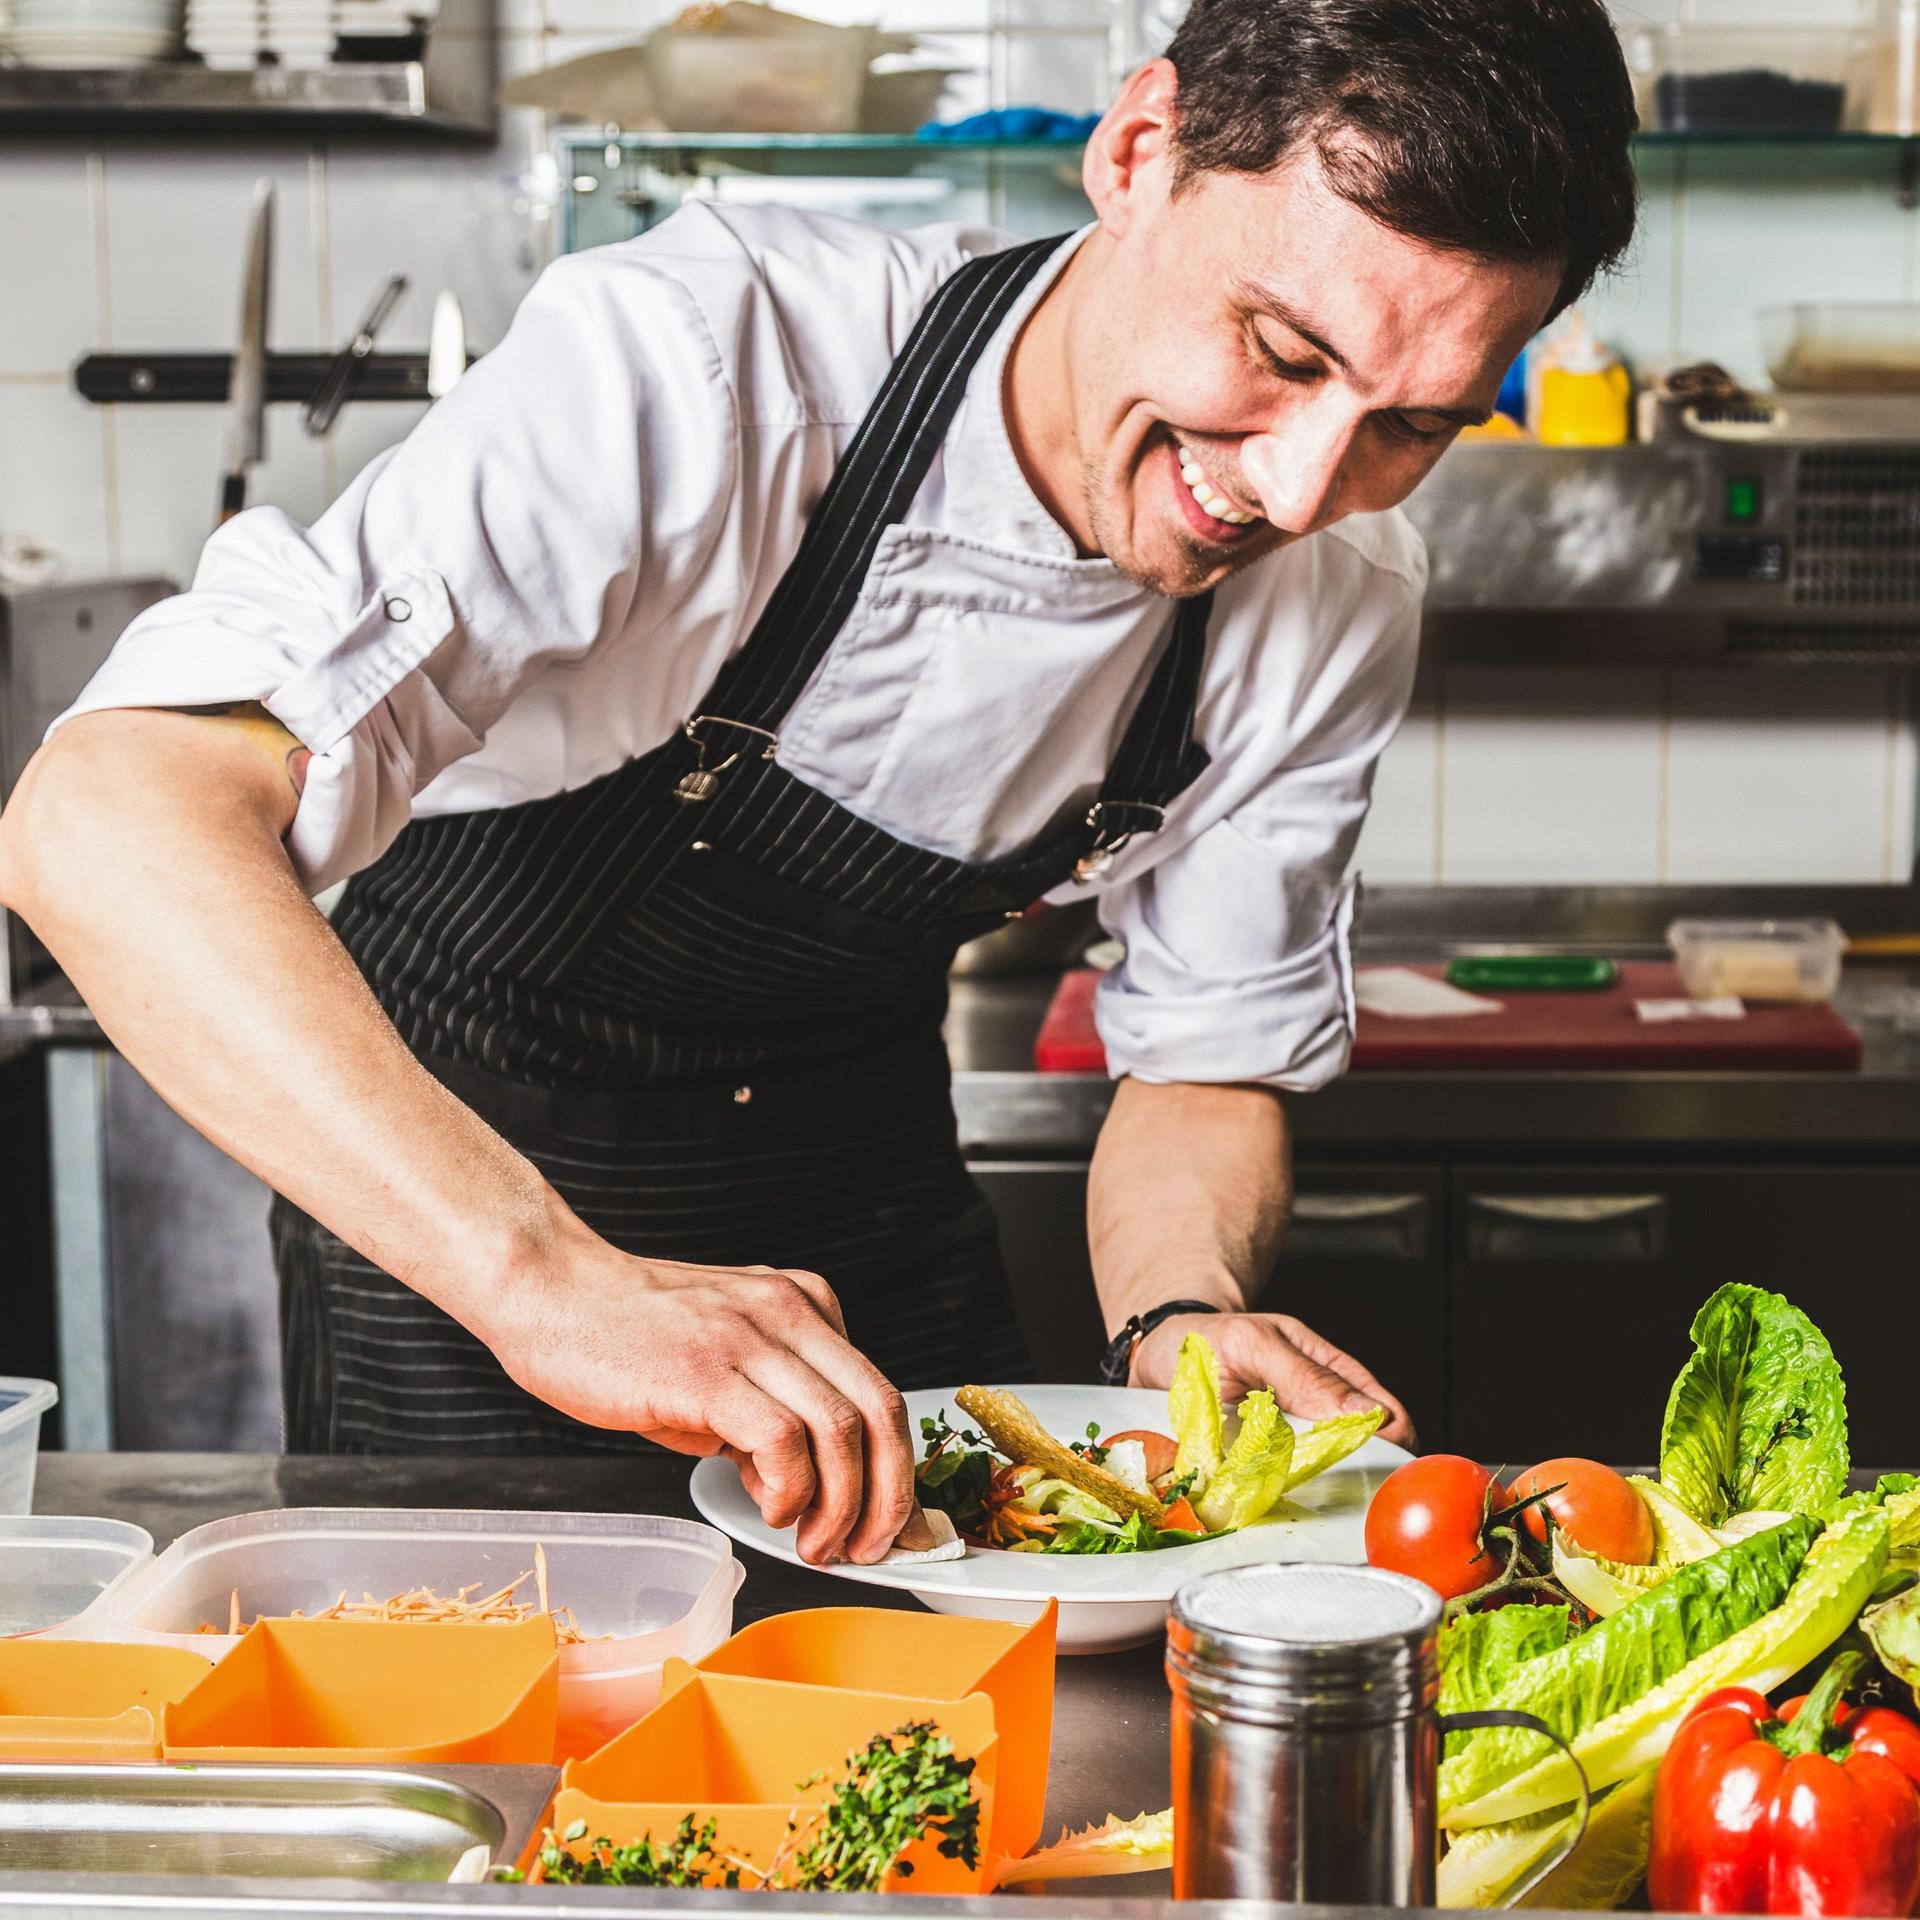 Professioneller Koch richtet lächelnd einen Salat in einer Restaurantküche an.